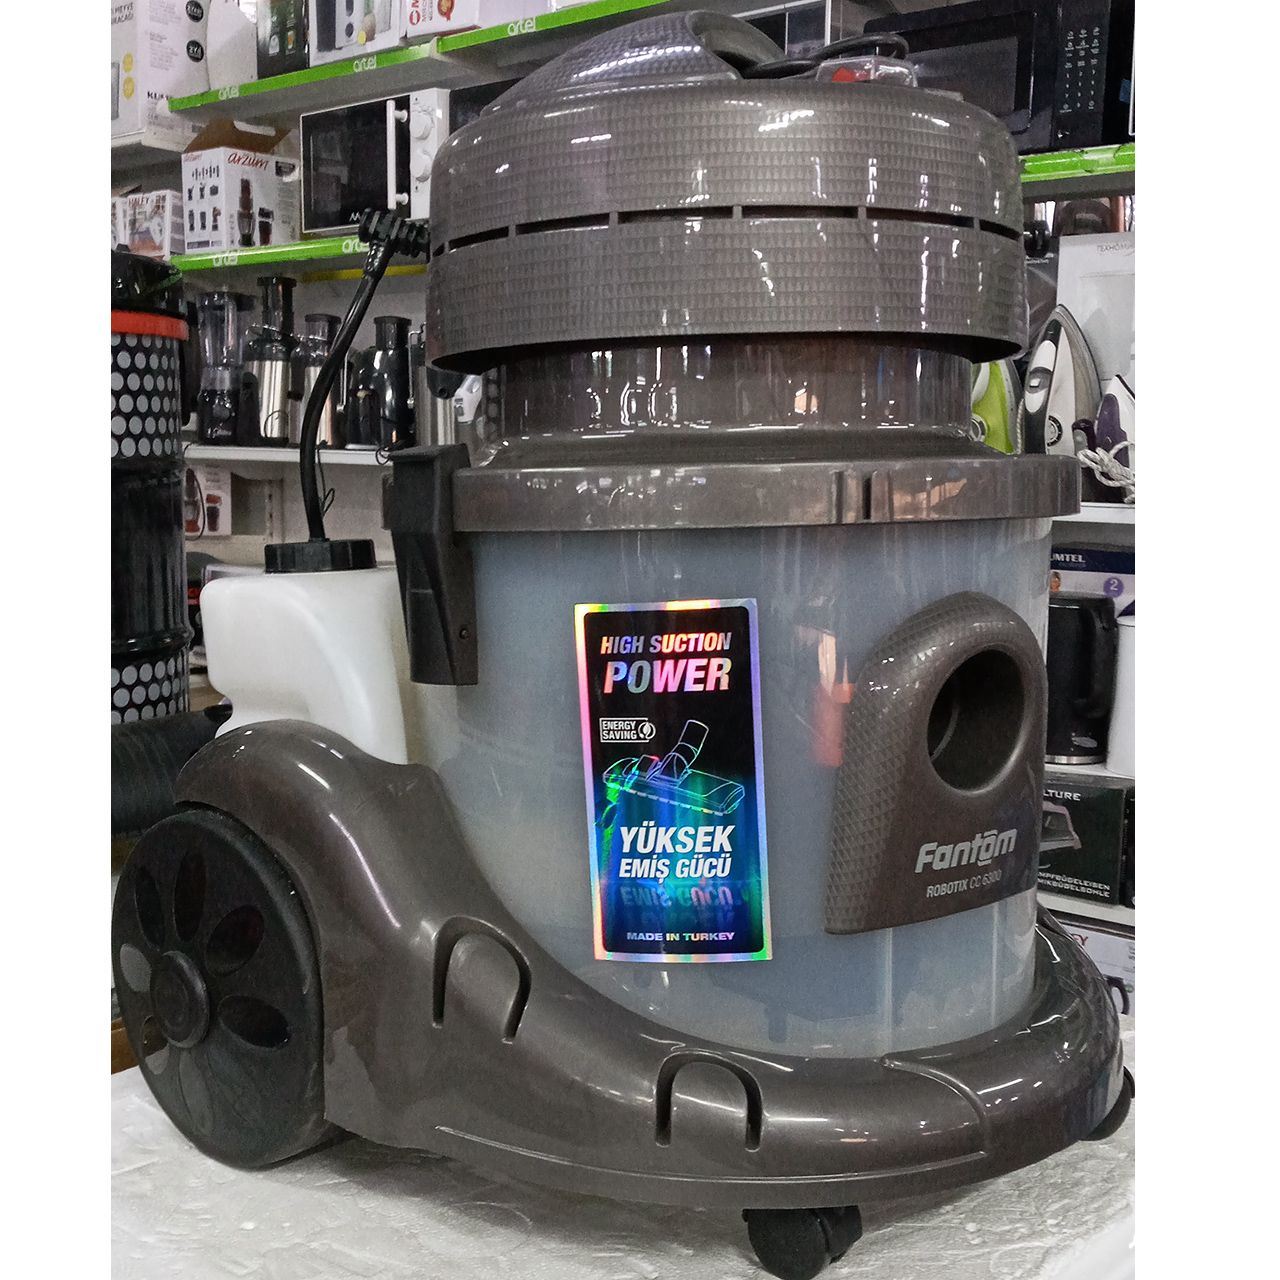 Пылесос Fantom RoboTix мощностью 2800 Вт